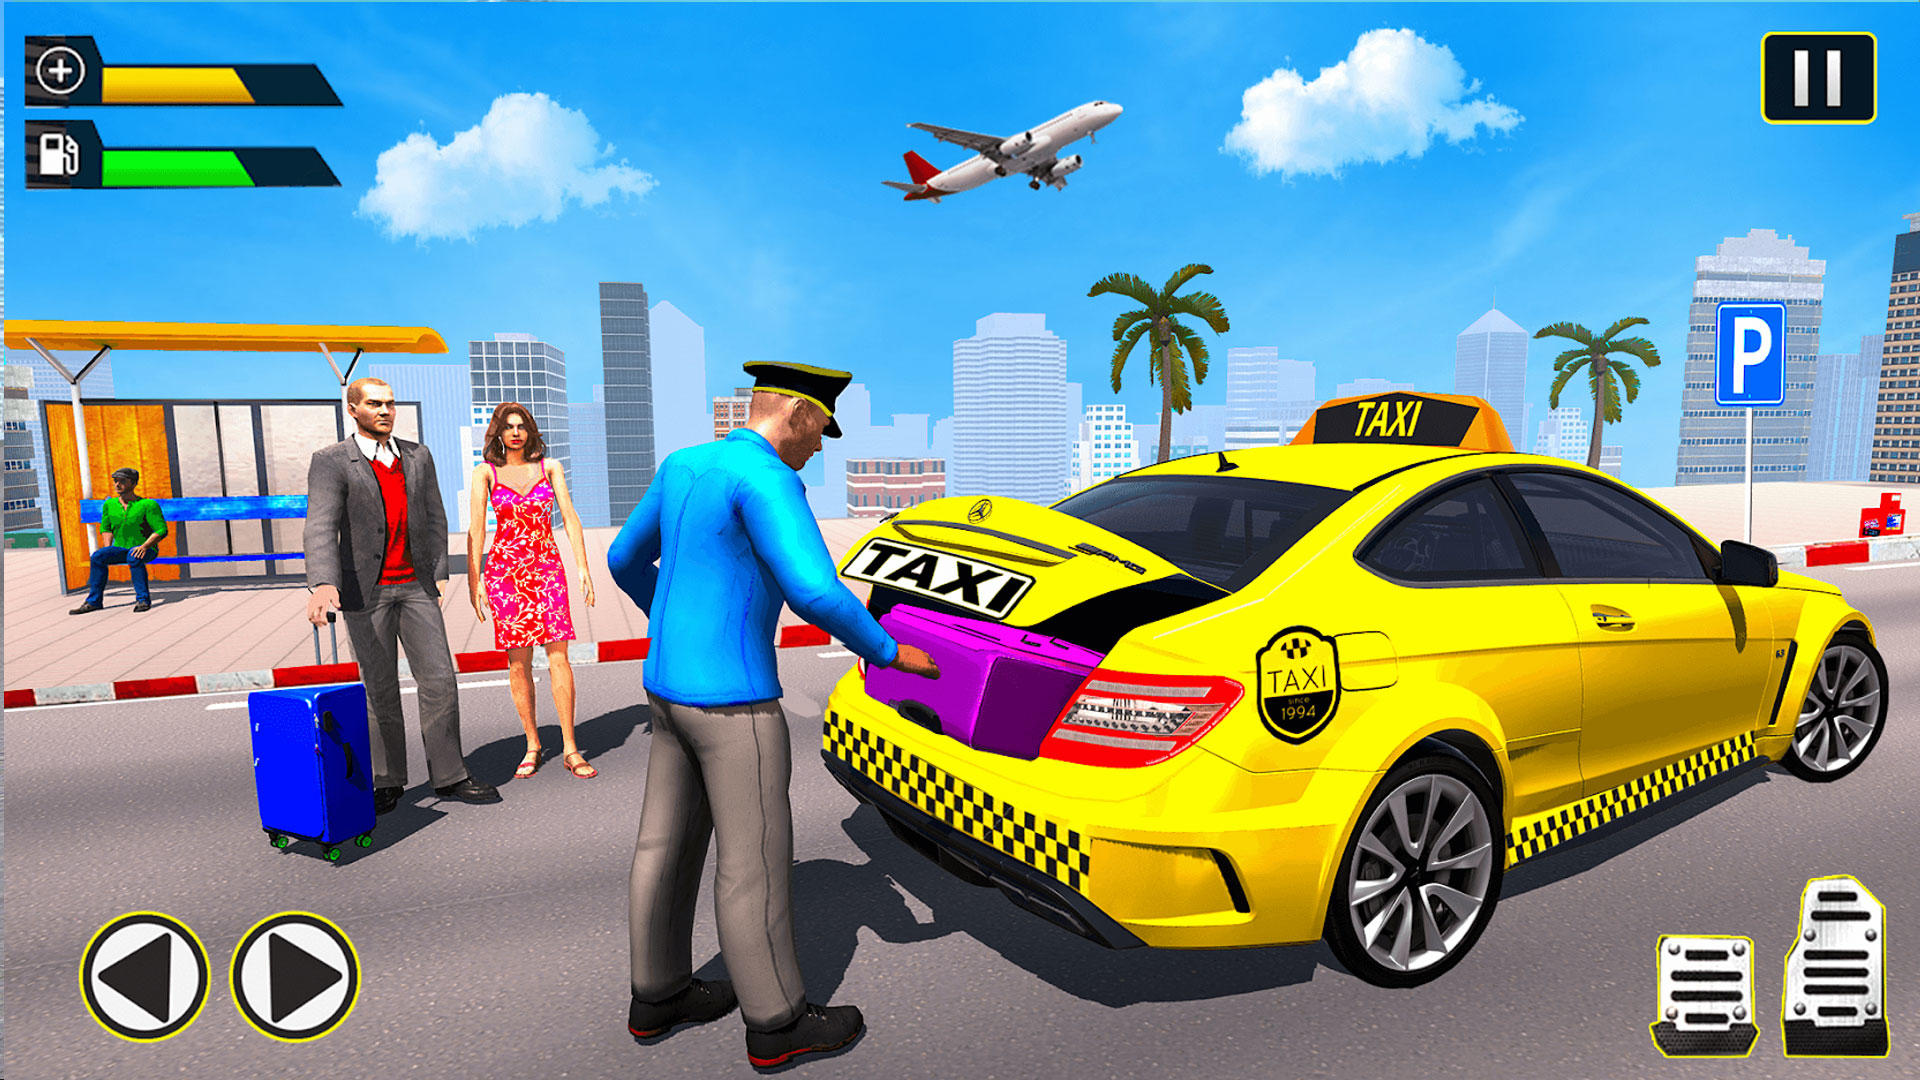 Screenshot 1 of Simulatore di taxi: giochi di taxi 3D 1.3.7